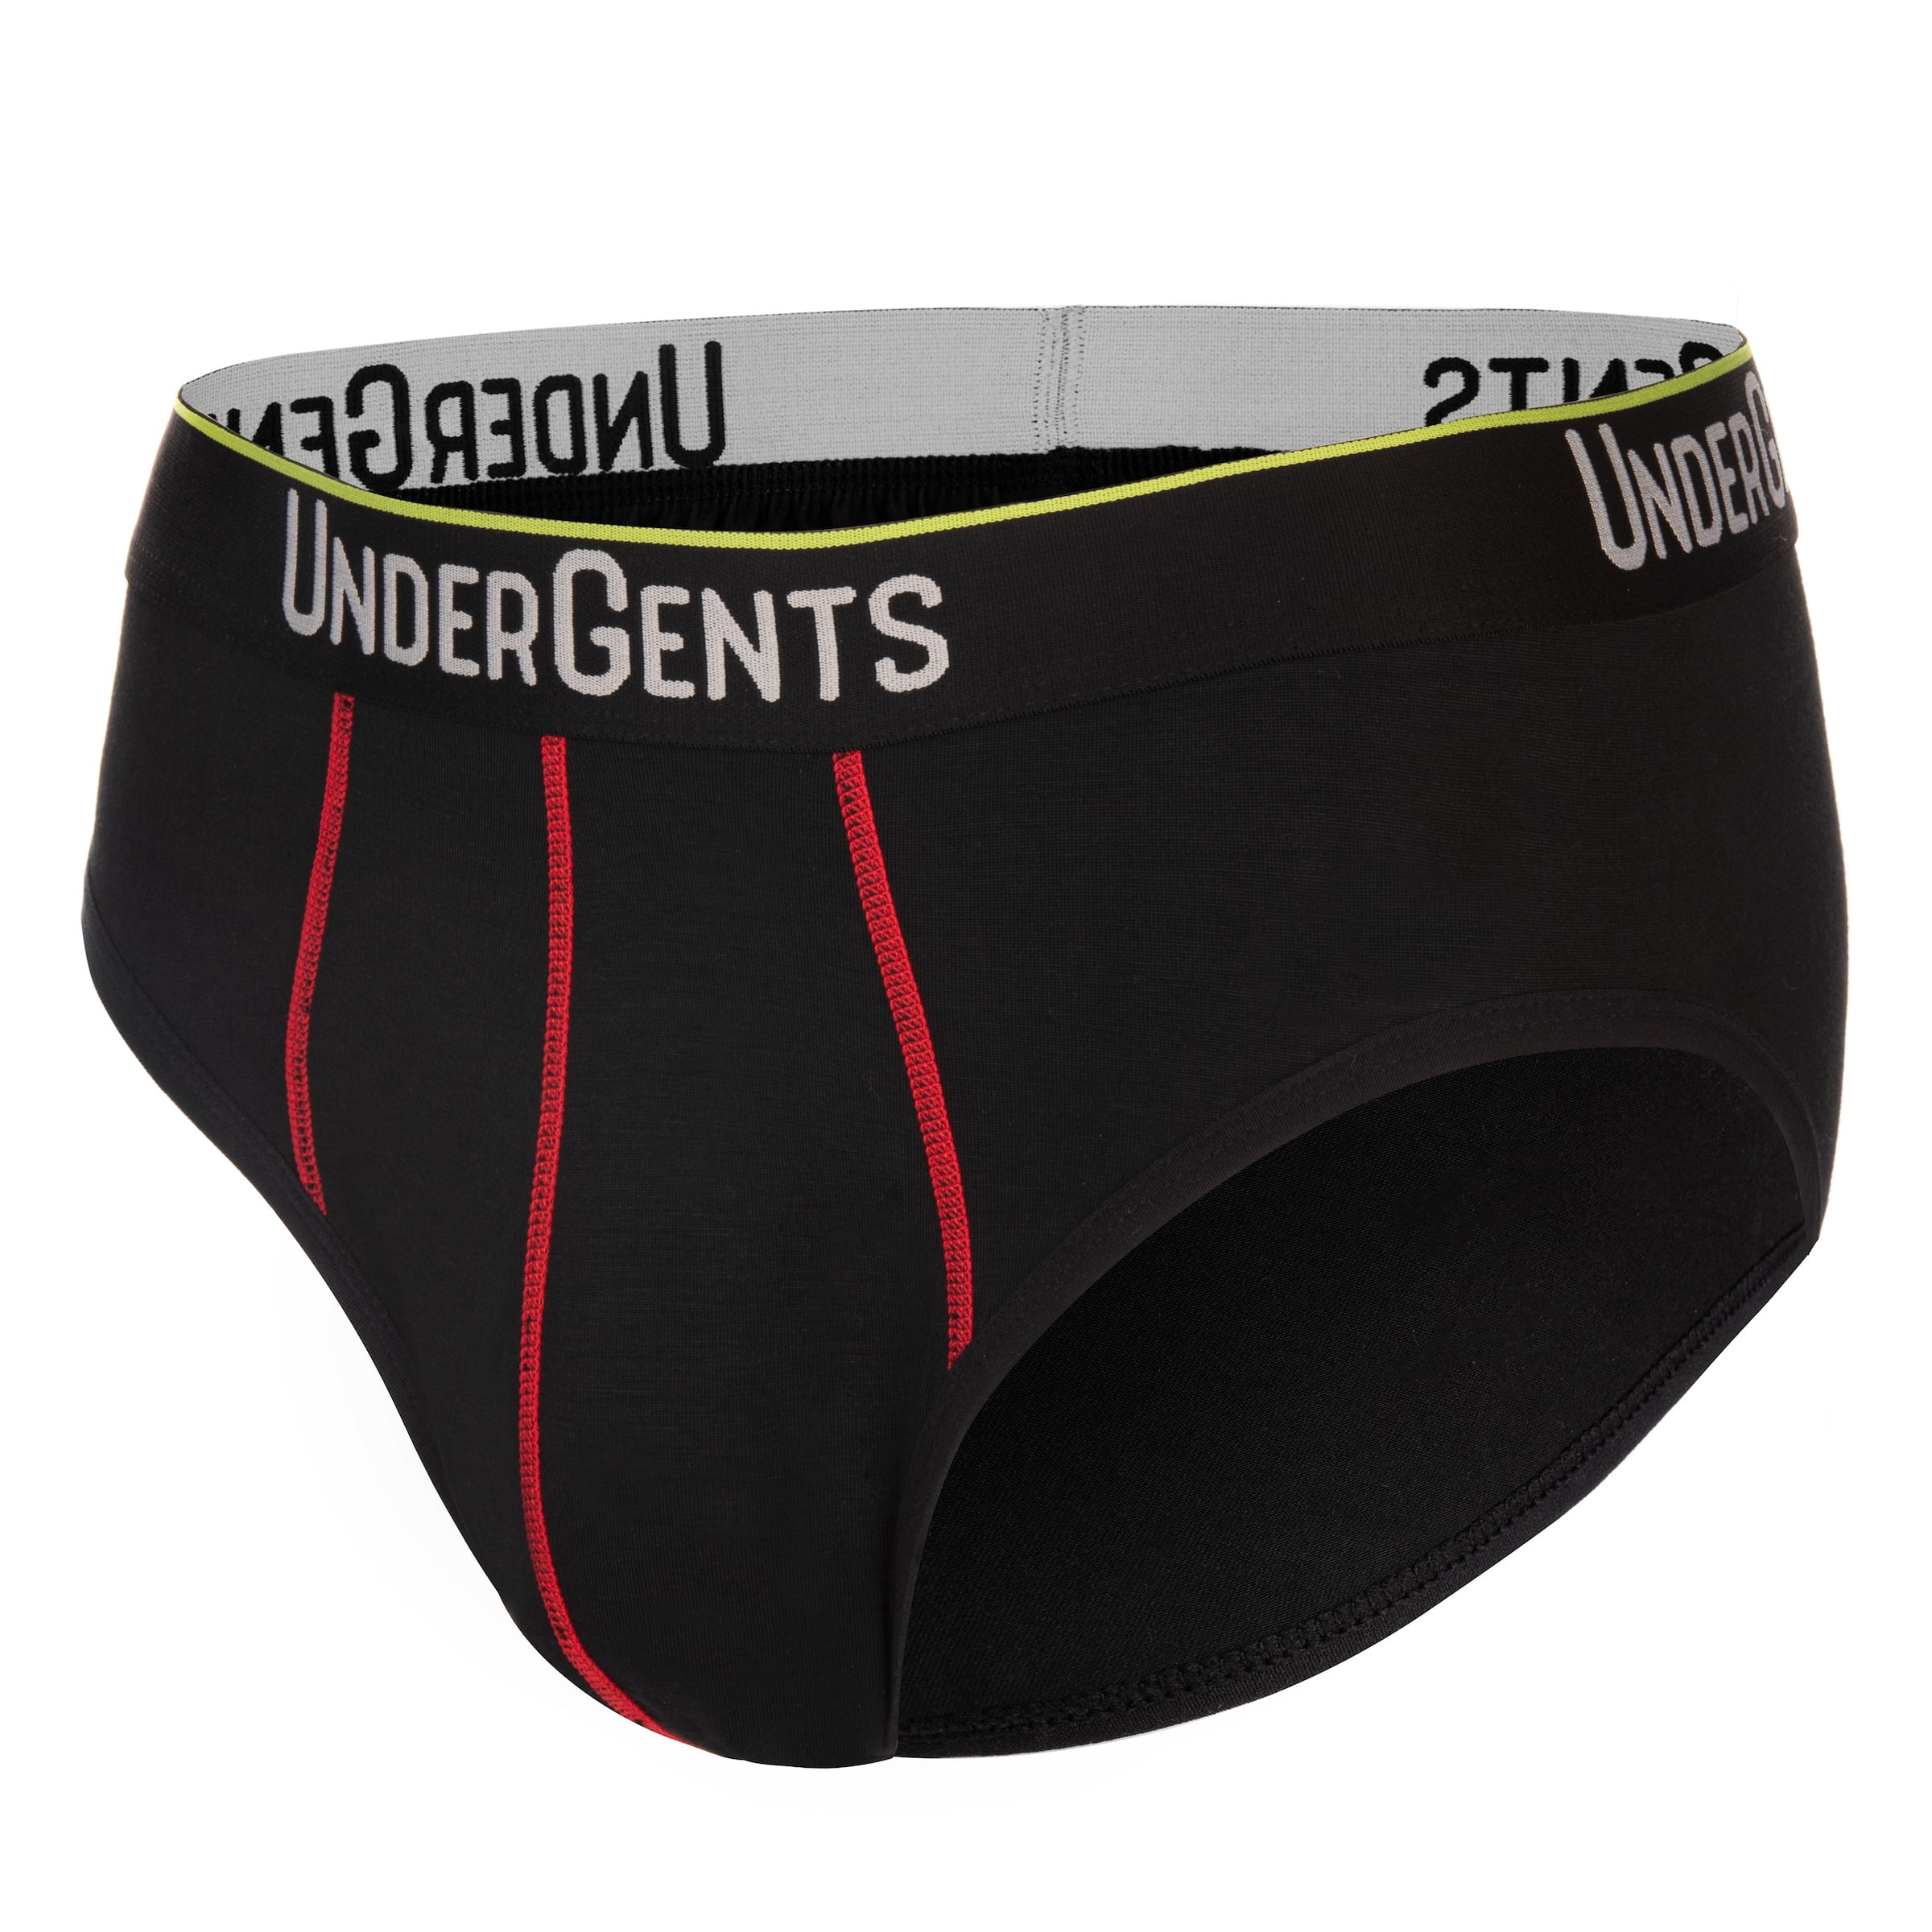 UnderGents - UnderGents Men's Brief Underwear - Maximum Comfort with ...